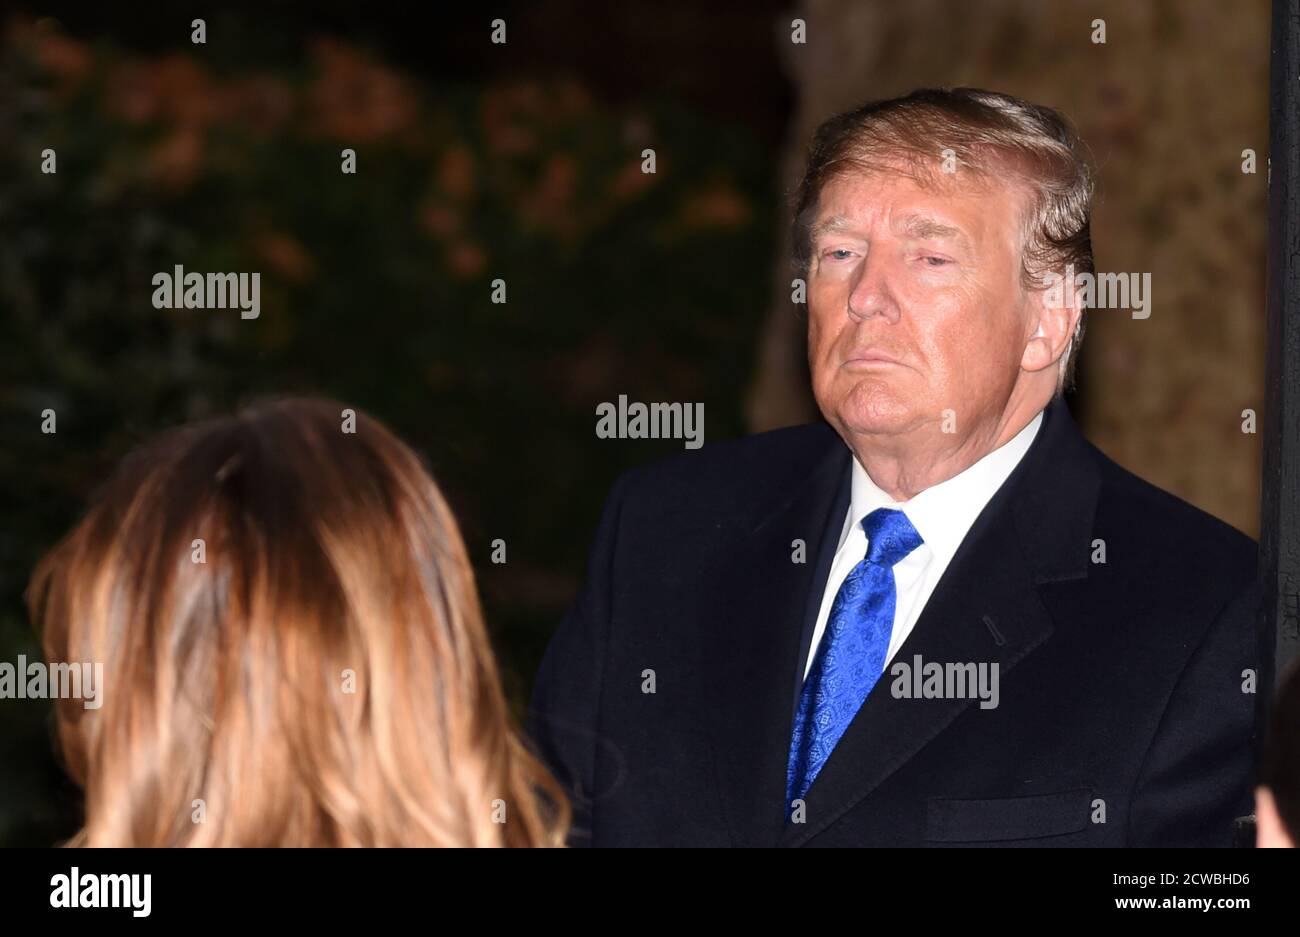 Photographie du président Donald Trump avec son épouse Melania Trump lors du sommet de l'OTAN à Londres, décembre 2019 Banque D'Images